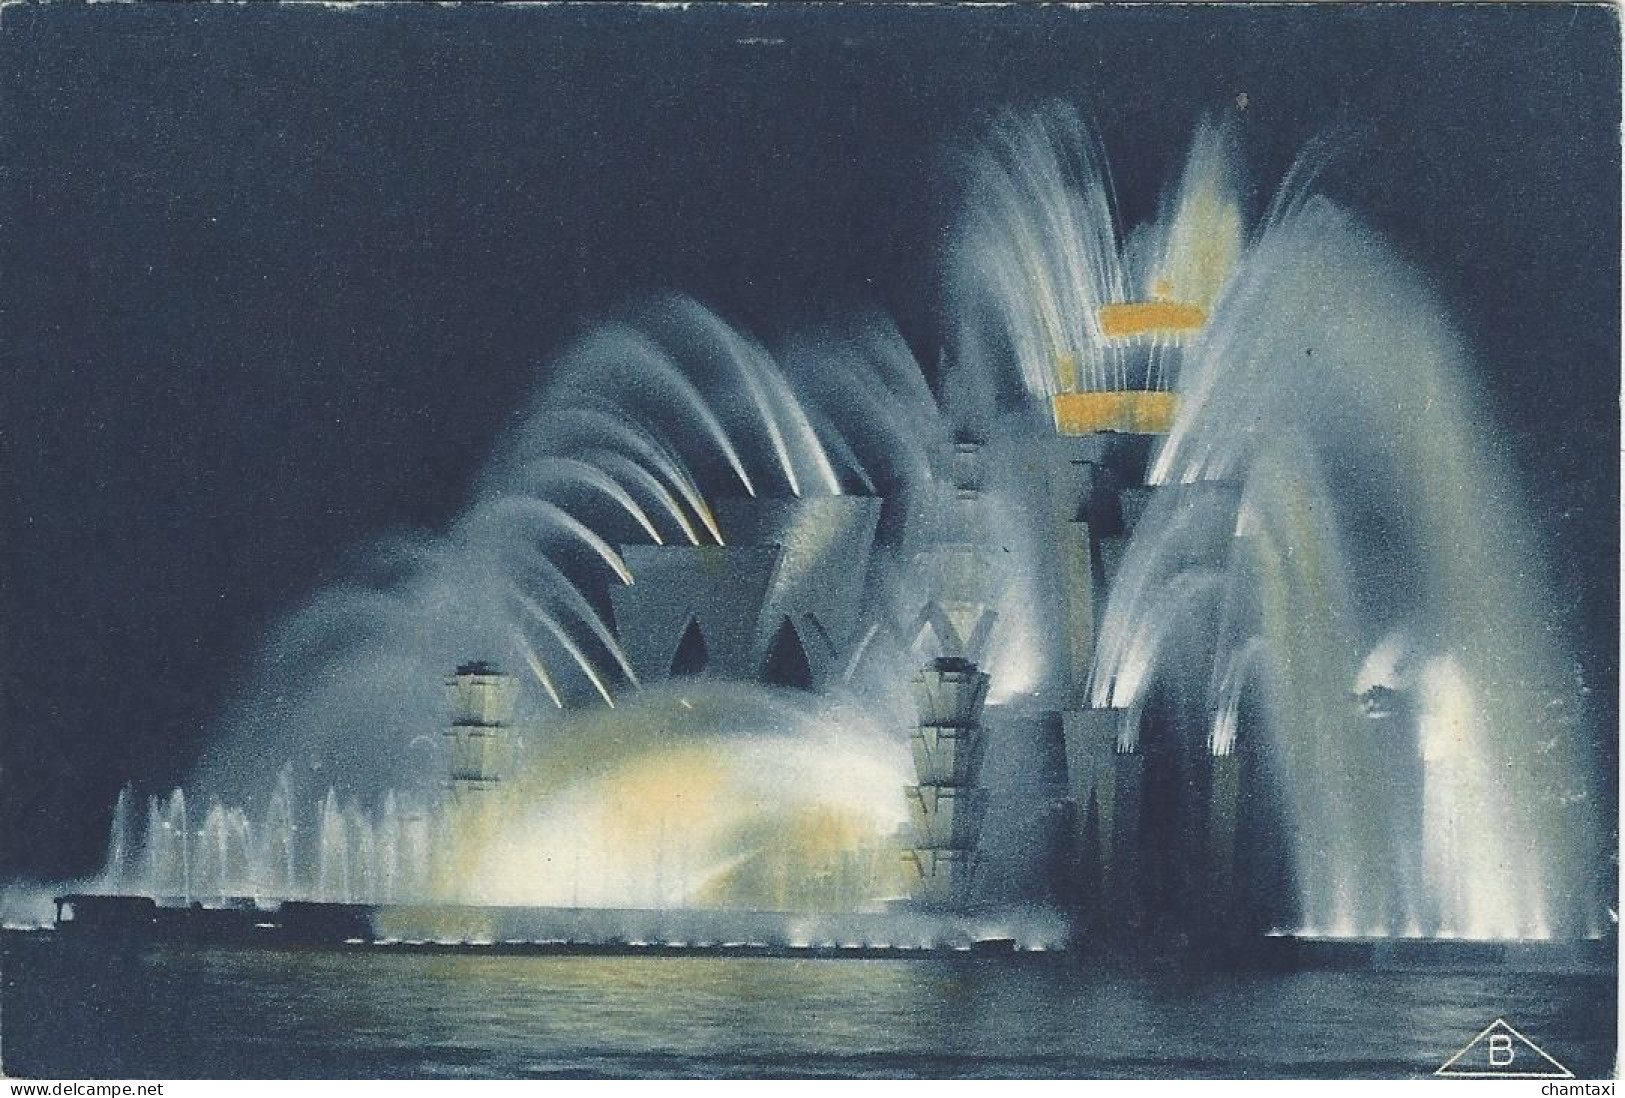 75 PARIS EXPOSITION  COLONIALE INTERNATIONALE 1931 THEATRE D'EAU VUE DE NUIT ARCHITECTES GRANET ET EXPERT Edi BRAUN 356 - Expositions